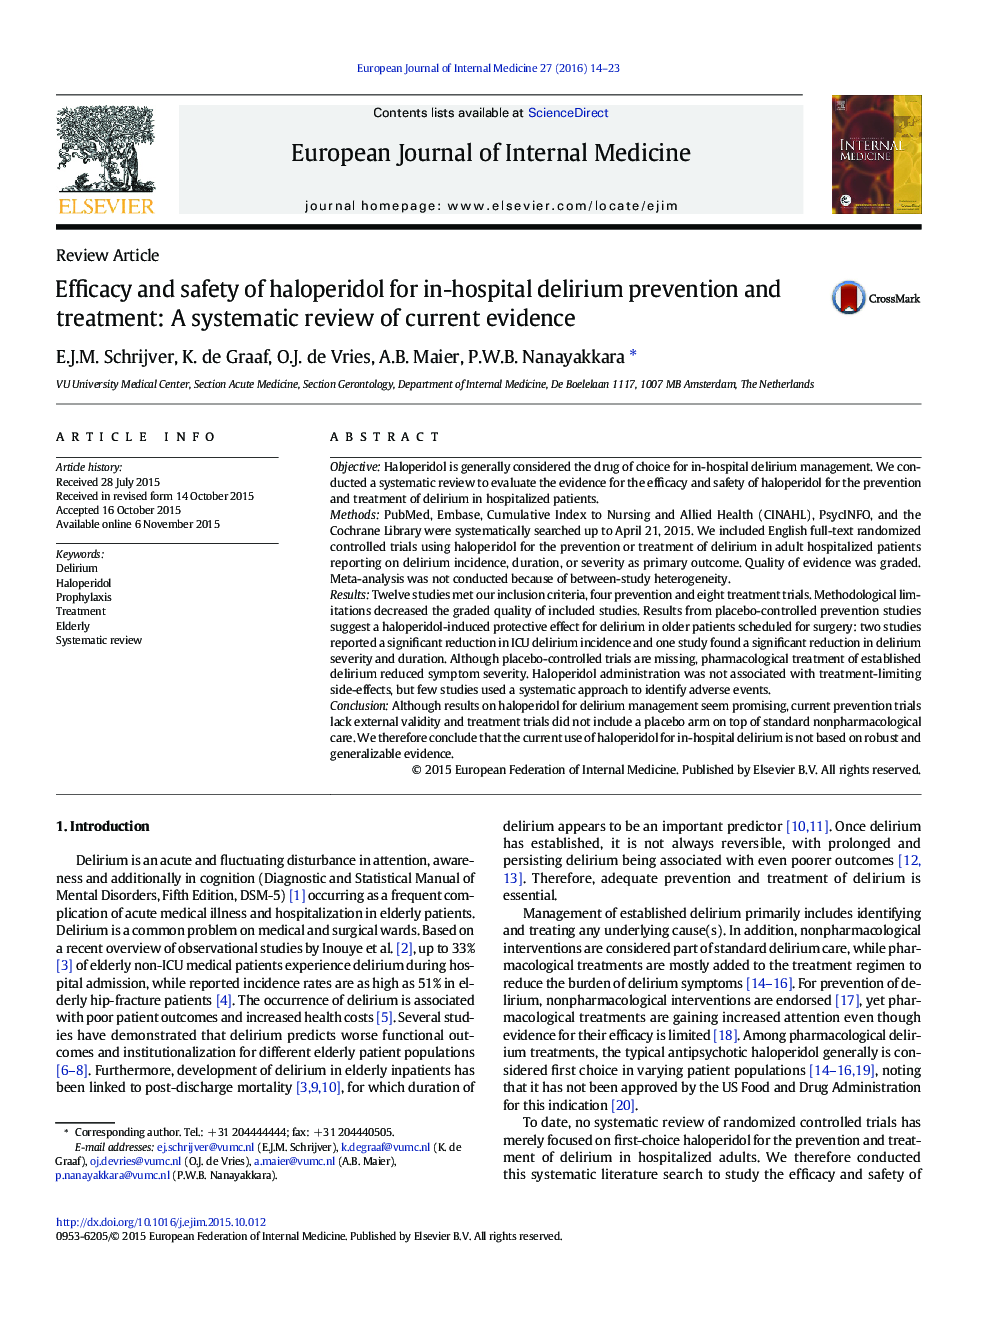 اثربخشی و ایمنی هالوپریدول برای پیشگیری و درمان کمردرد در بیمارستان: بررسی سیستماتیک شواهد موجود 